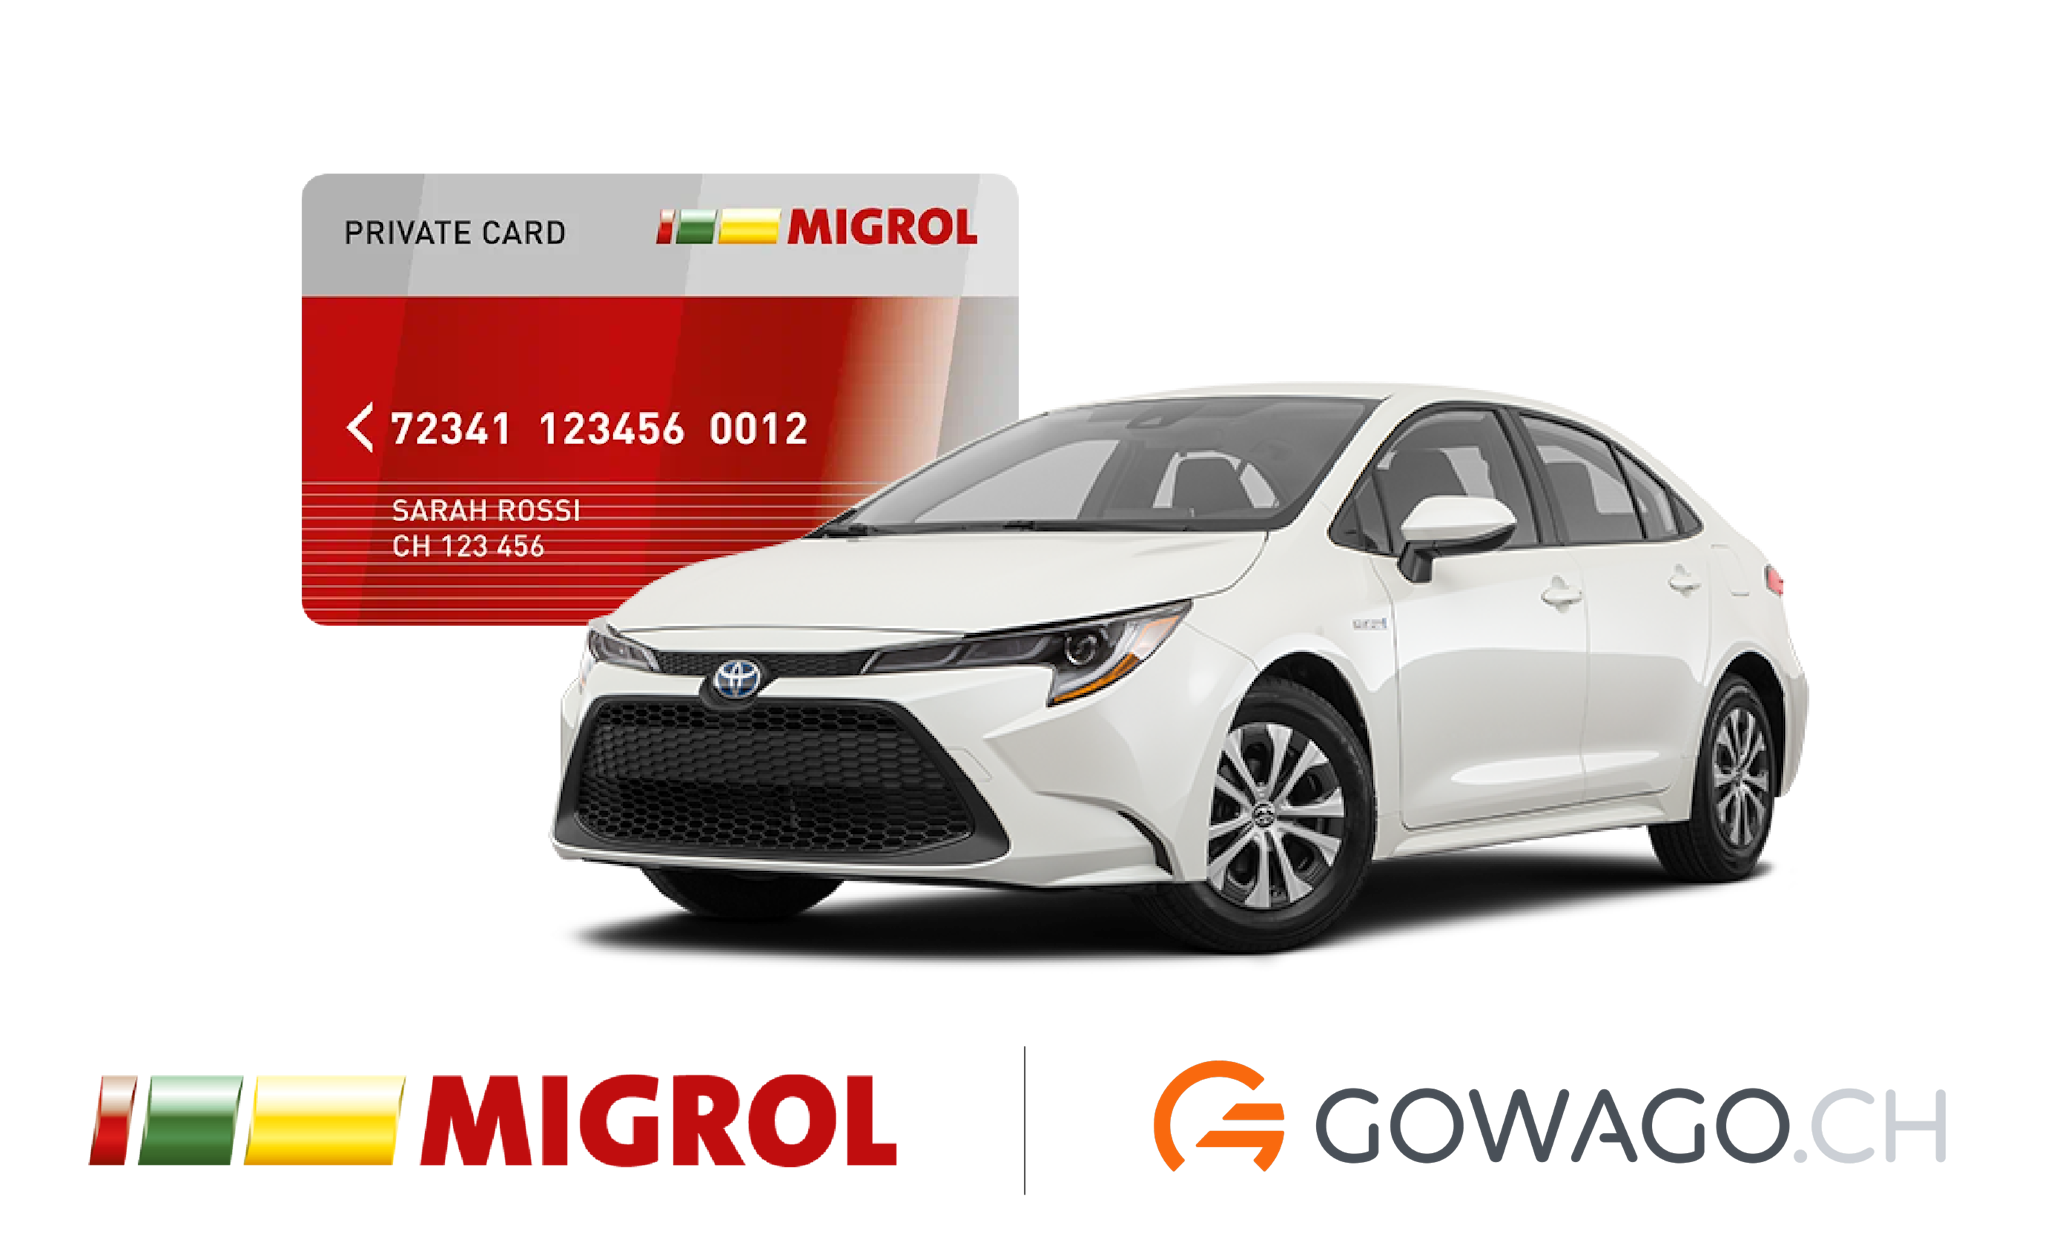 blog item card - Entdecke die vielen Vorteile der Migrolcard bei gowago.ch: Rabatte auf Benzin, beim Autowaschen und vieles mehr.